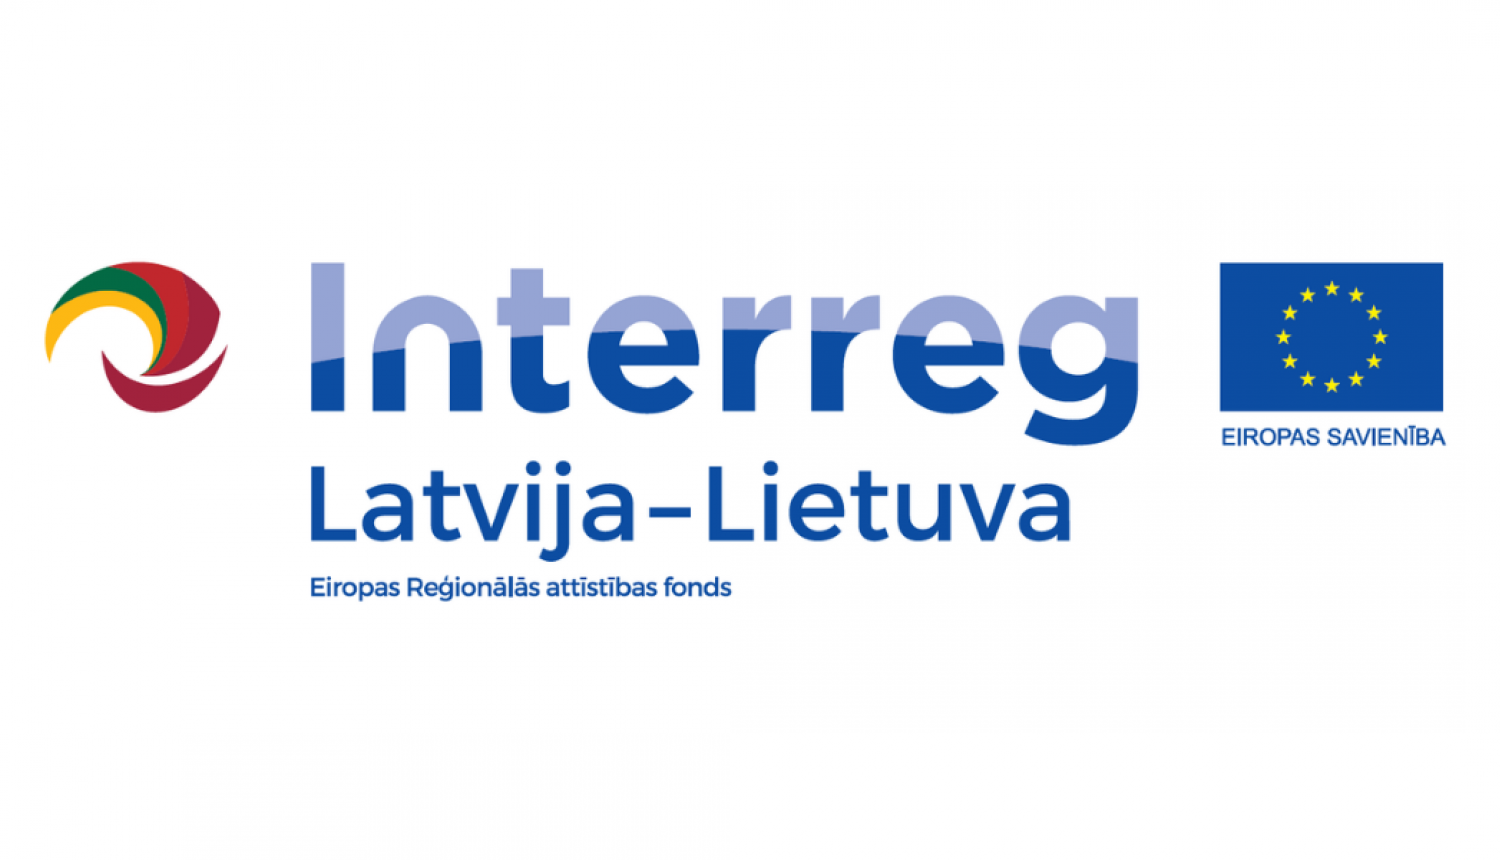 Interreg logo LAtvija - Lietuva